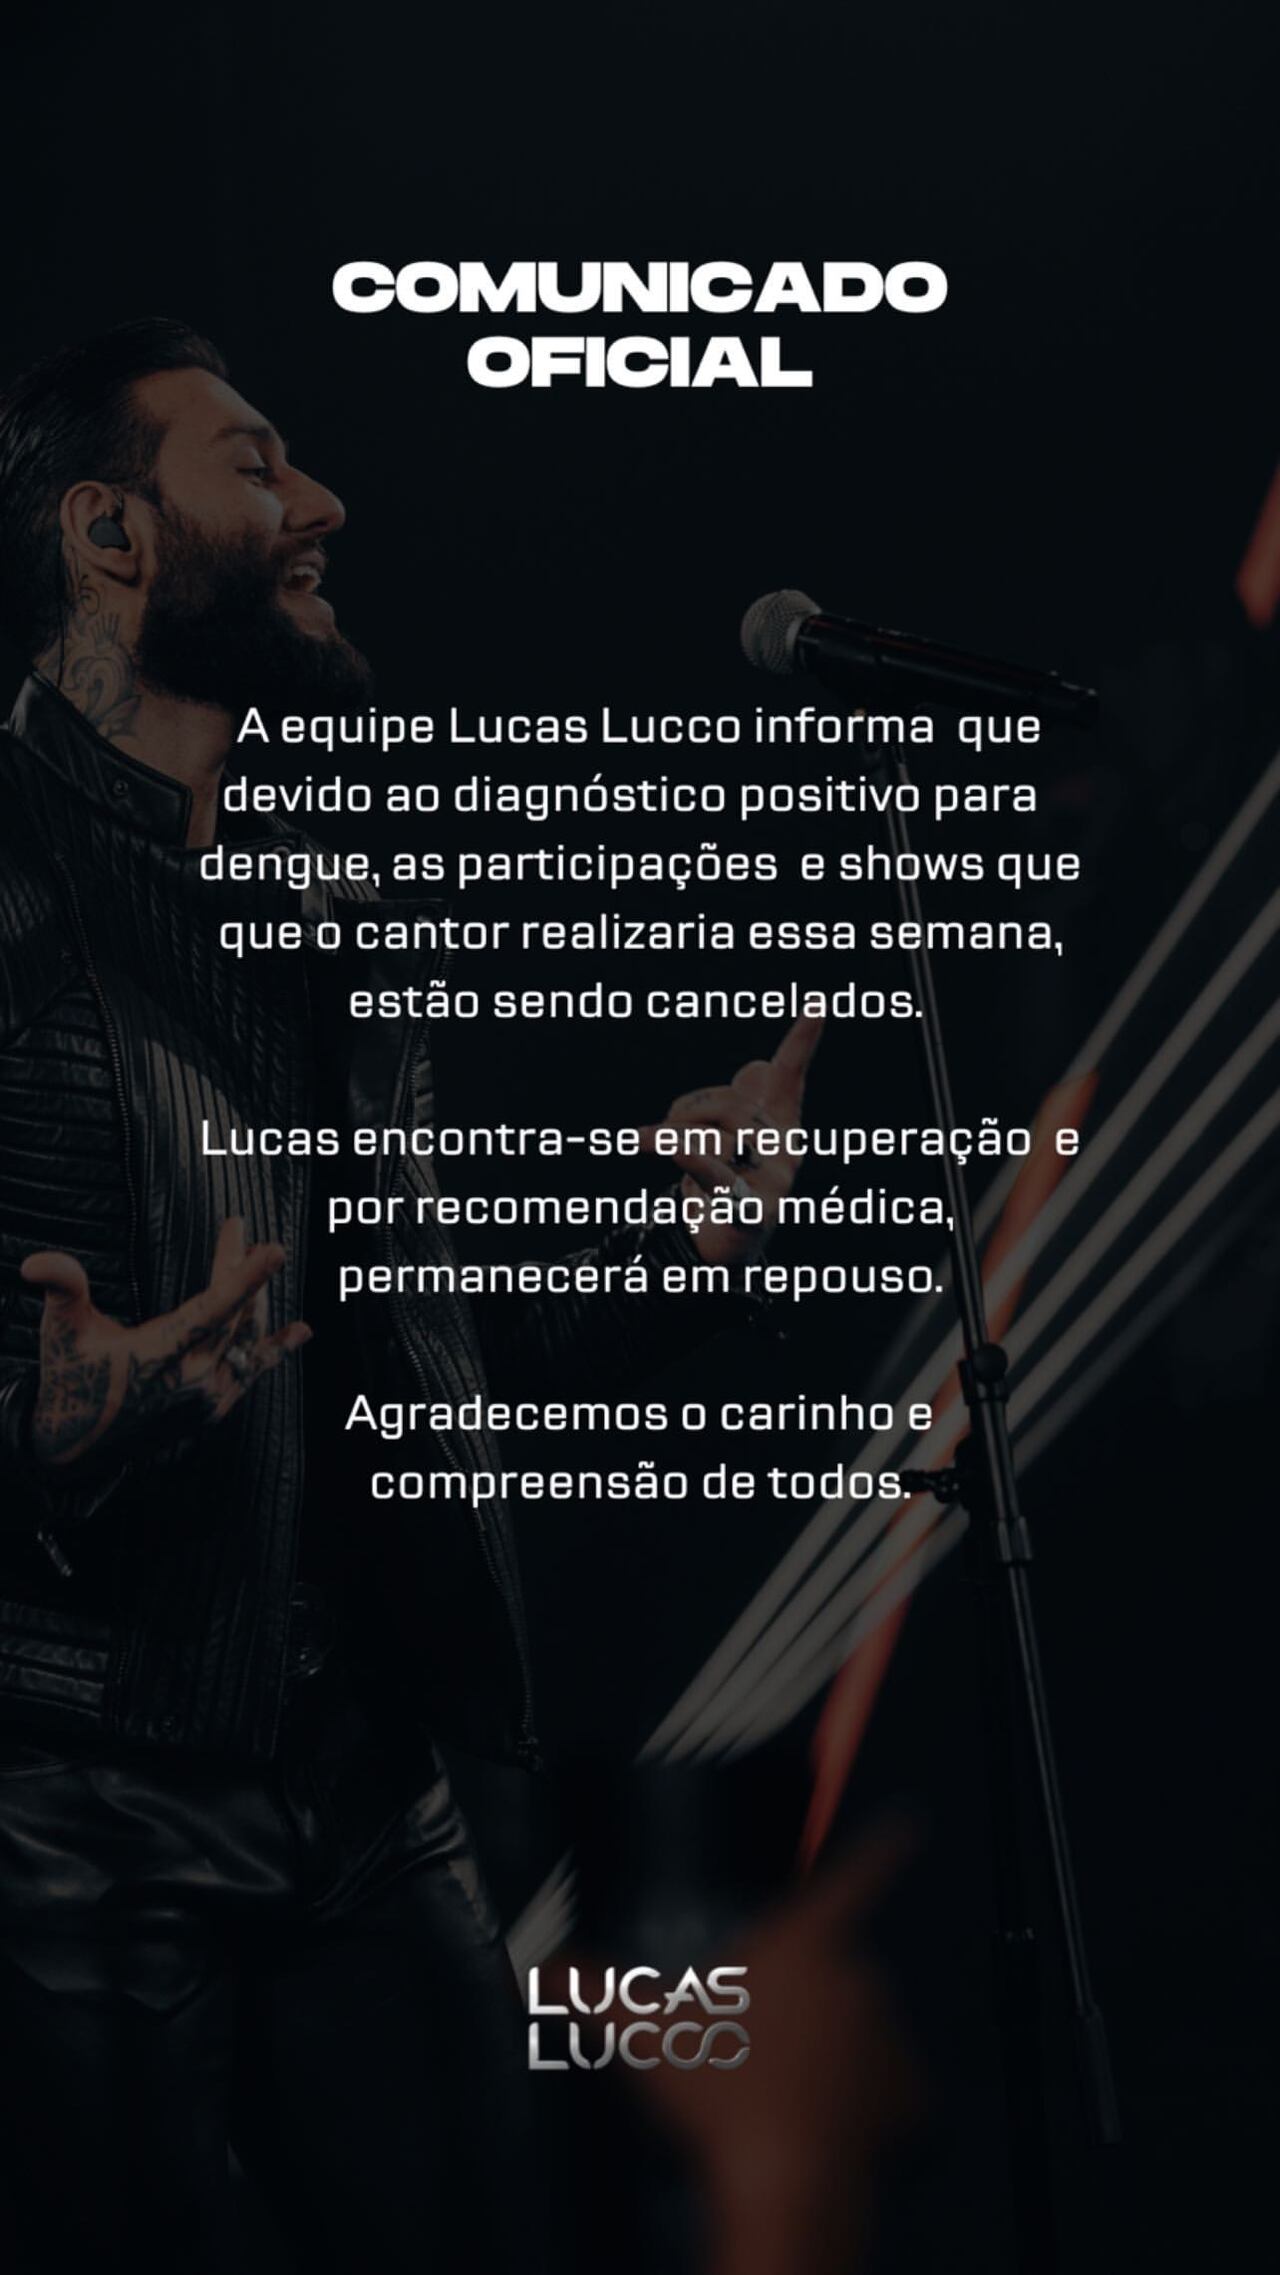 Comunicado da equipe de Lucas Lucco
